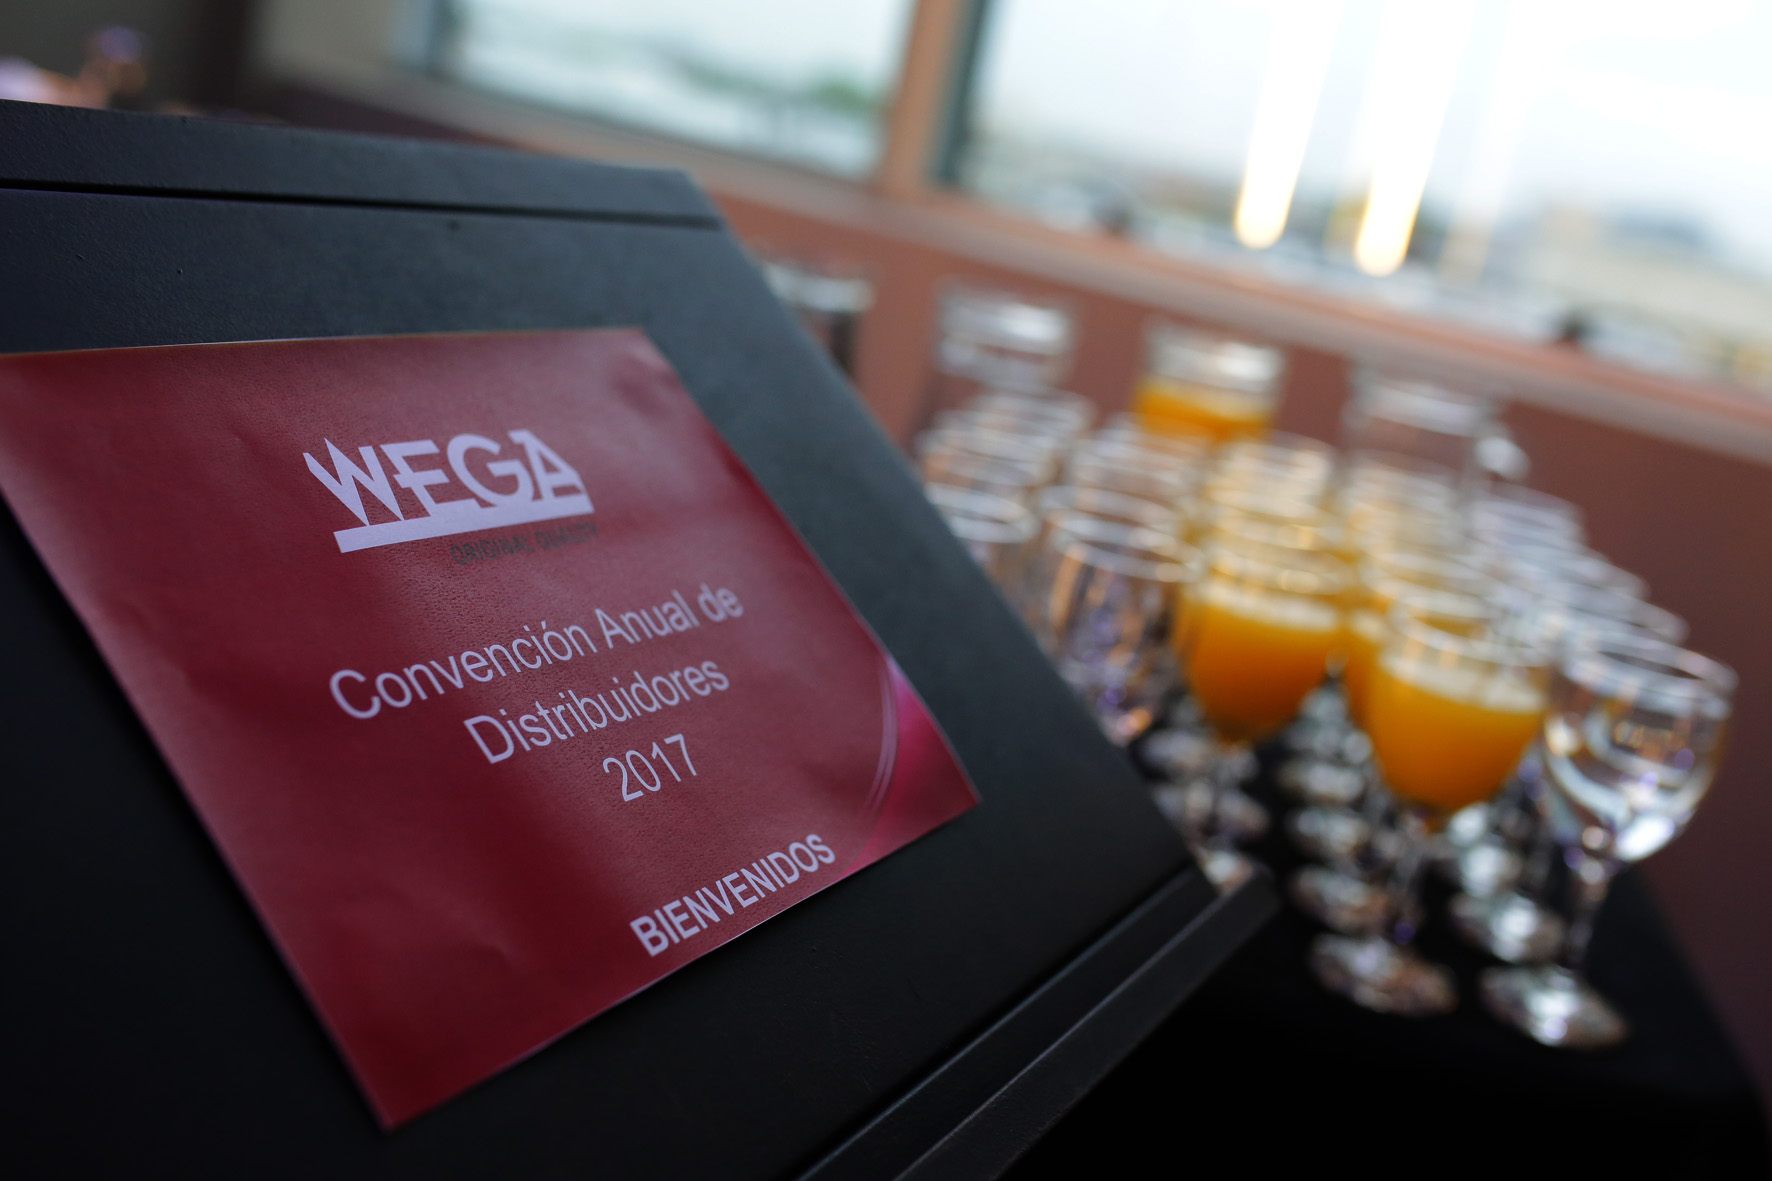 Wega realizó su convención anual de distribuidores